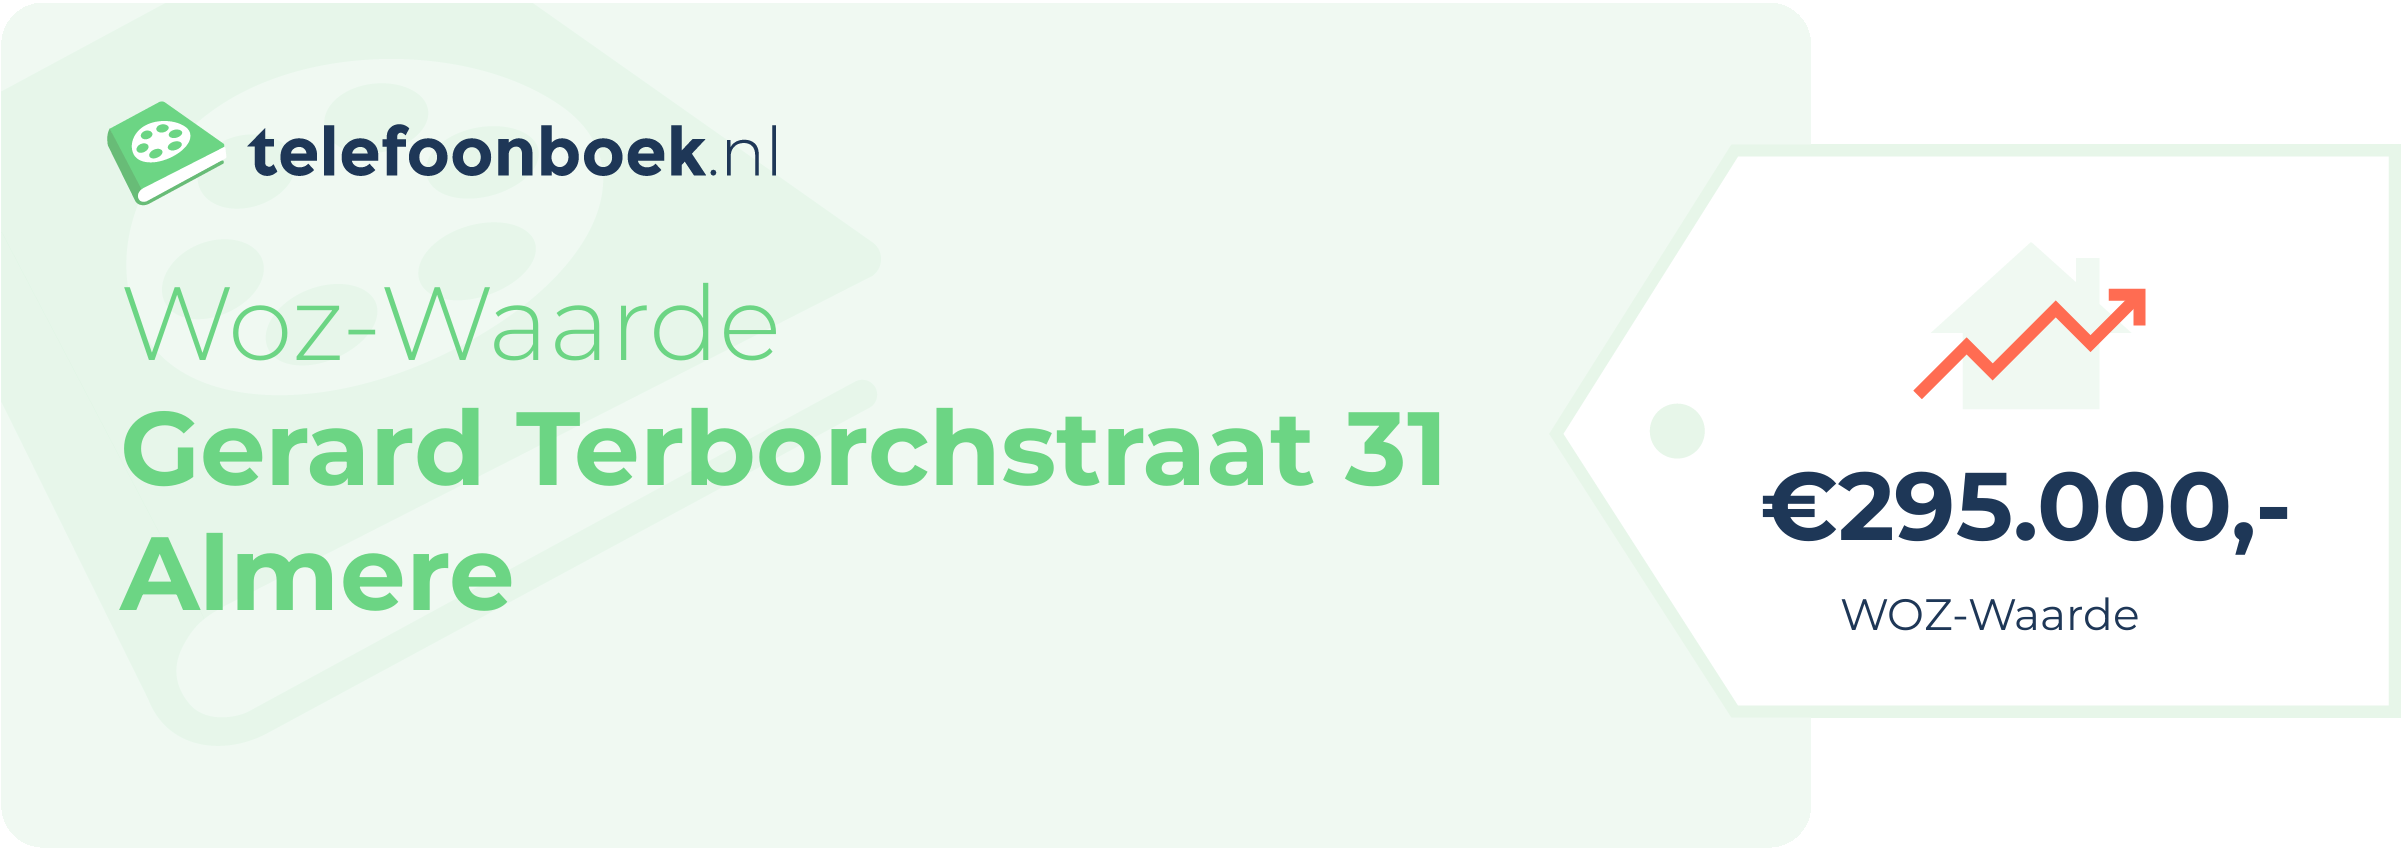 WOZ-waarde Gerard Terborchstraat 31 Almere